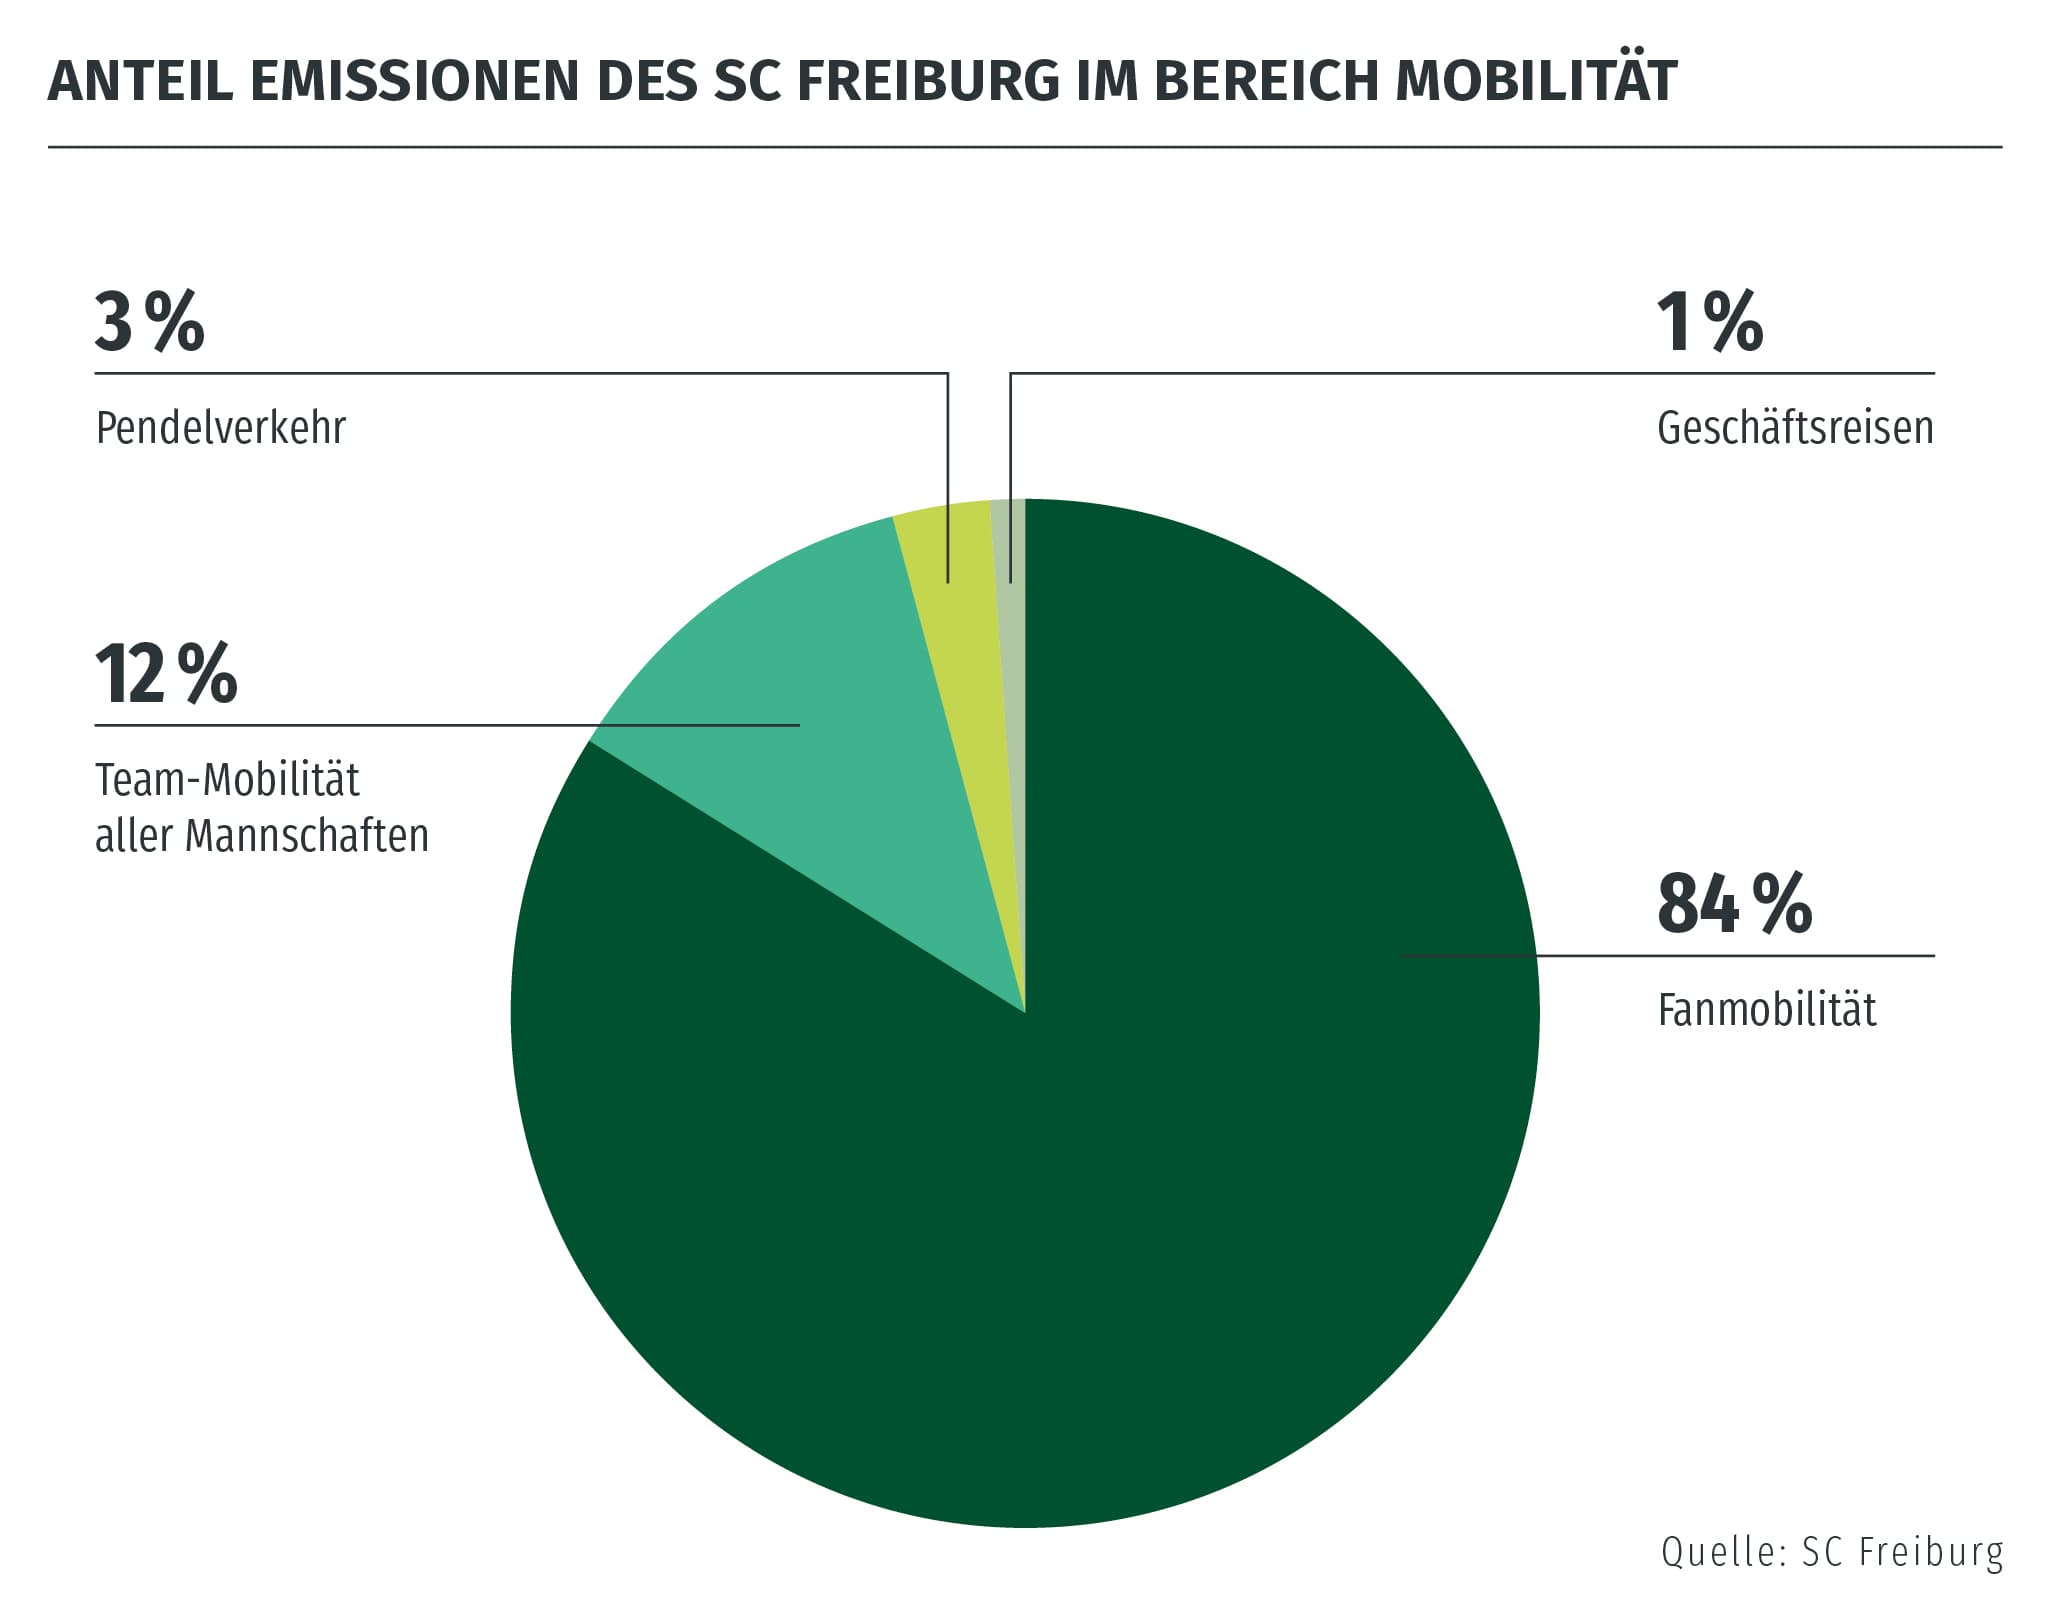 84 Prozent der Mobilitätsemissionen des SC Freiburg entfallen auf Fanmobilität.